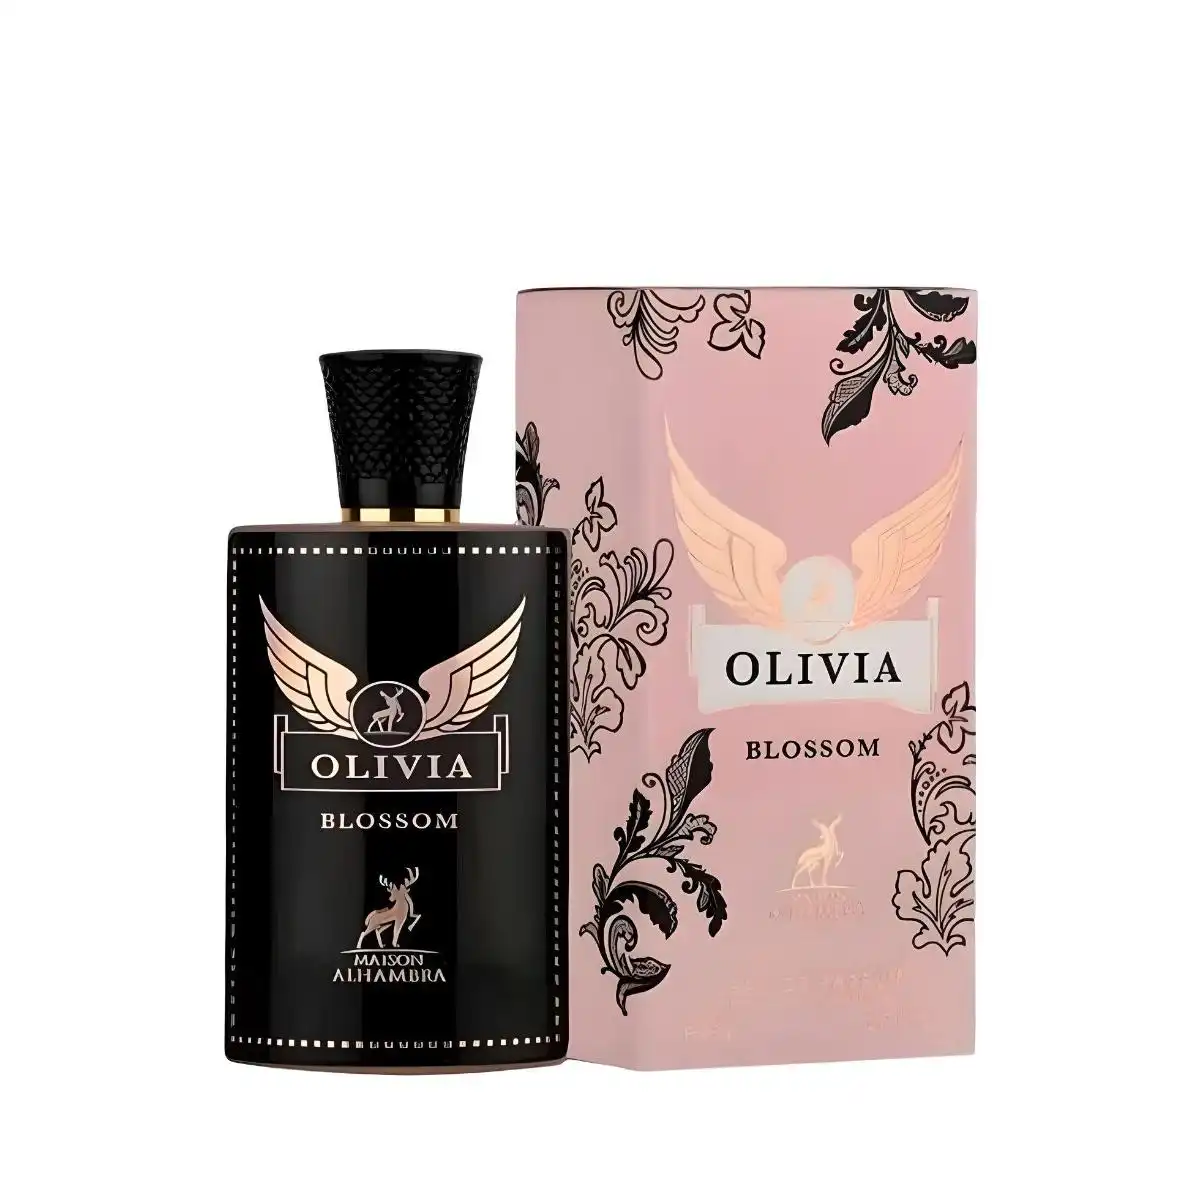 maison alhambra olivia blossom woda perfumowana 80 ml   